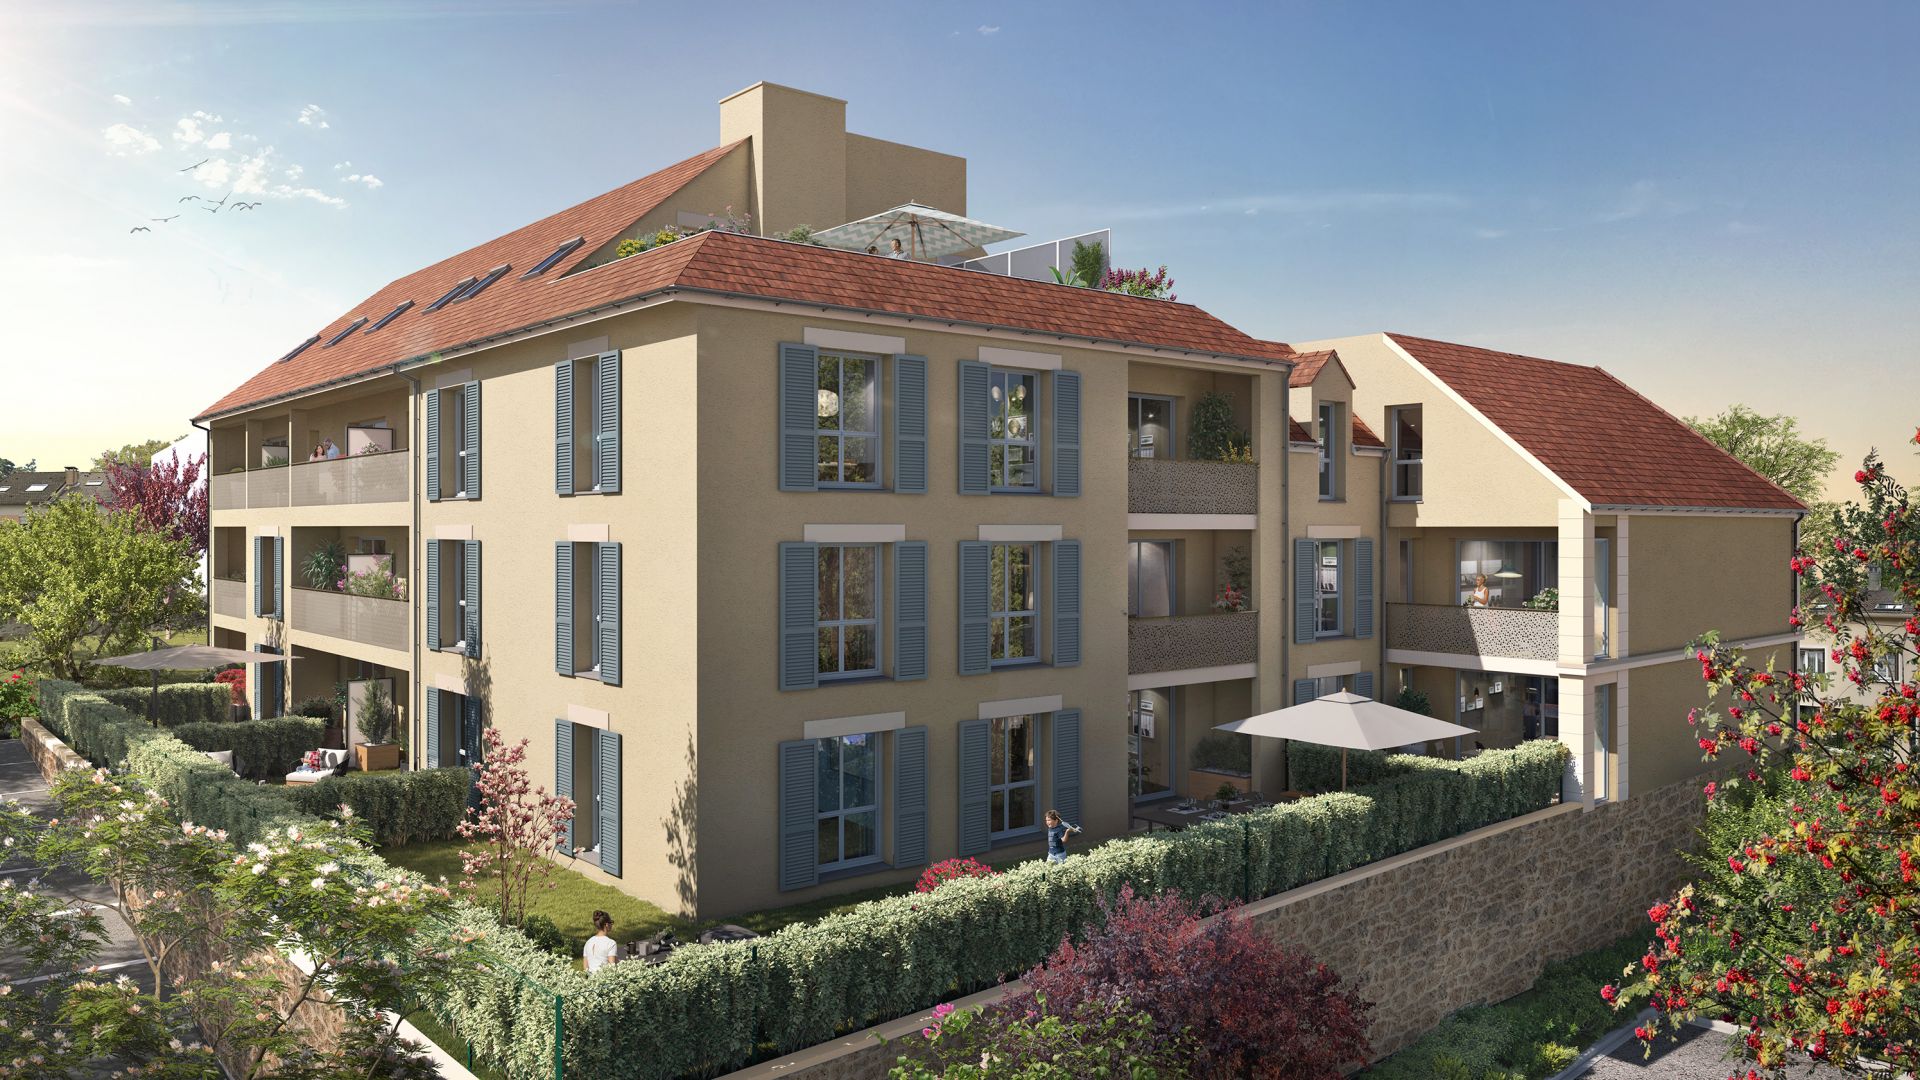 Greencity immobilier - achat appartements neufs du T1 au T4Duplex - Résidence Clos Séverac - 91290  Arpajon